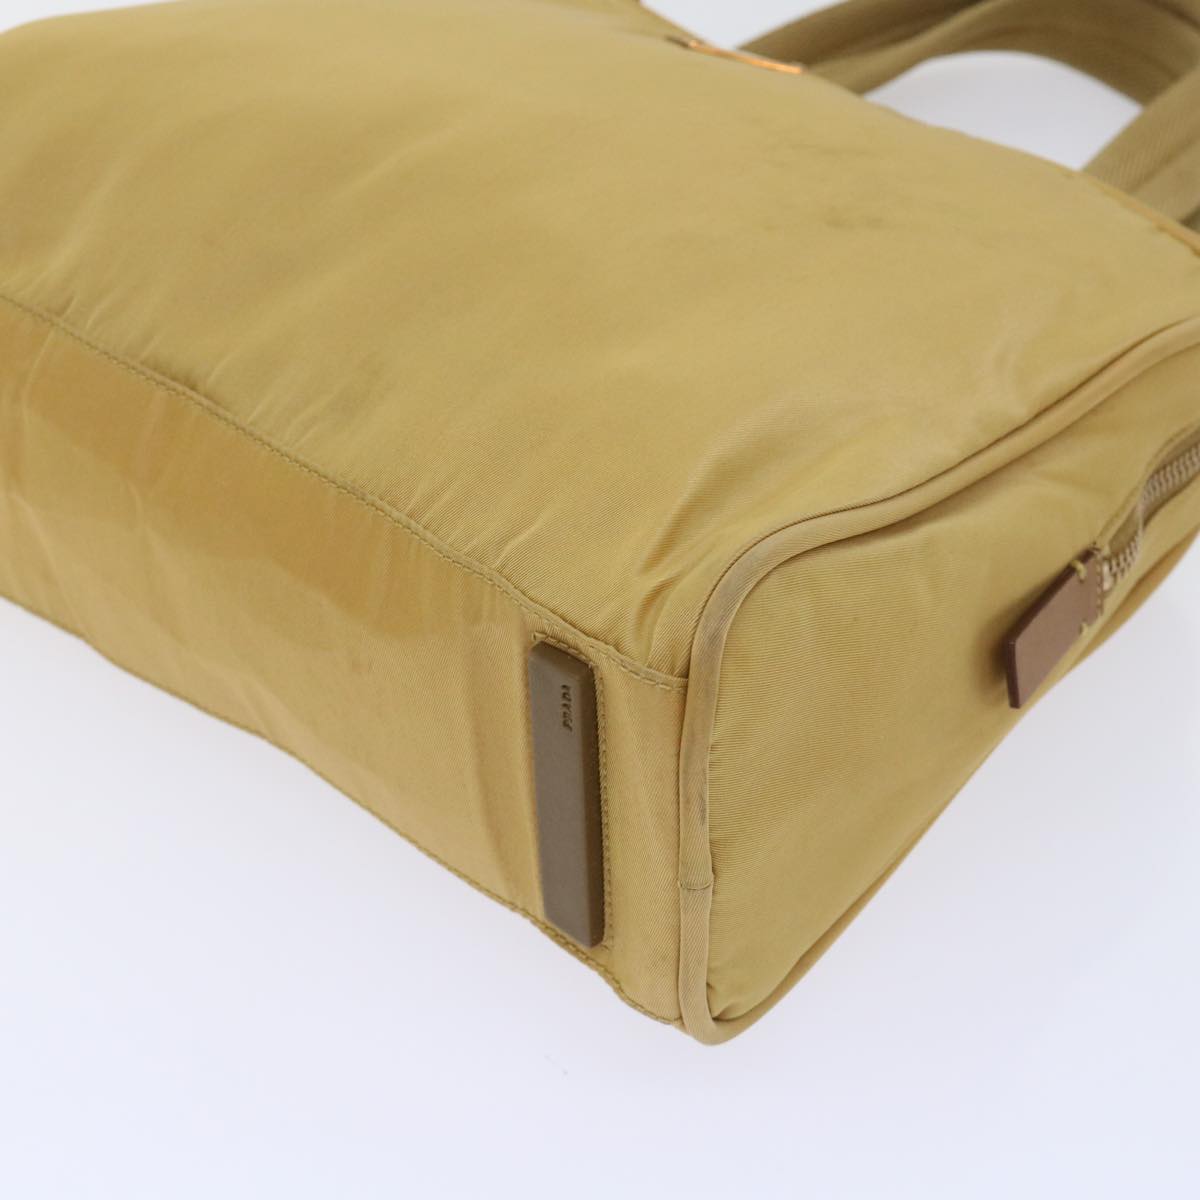 PRADA Hand Bag Nylon Yellow Auth 52732